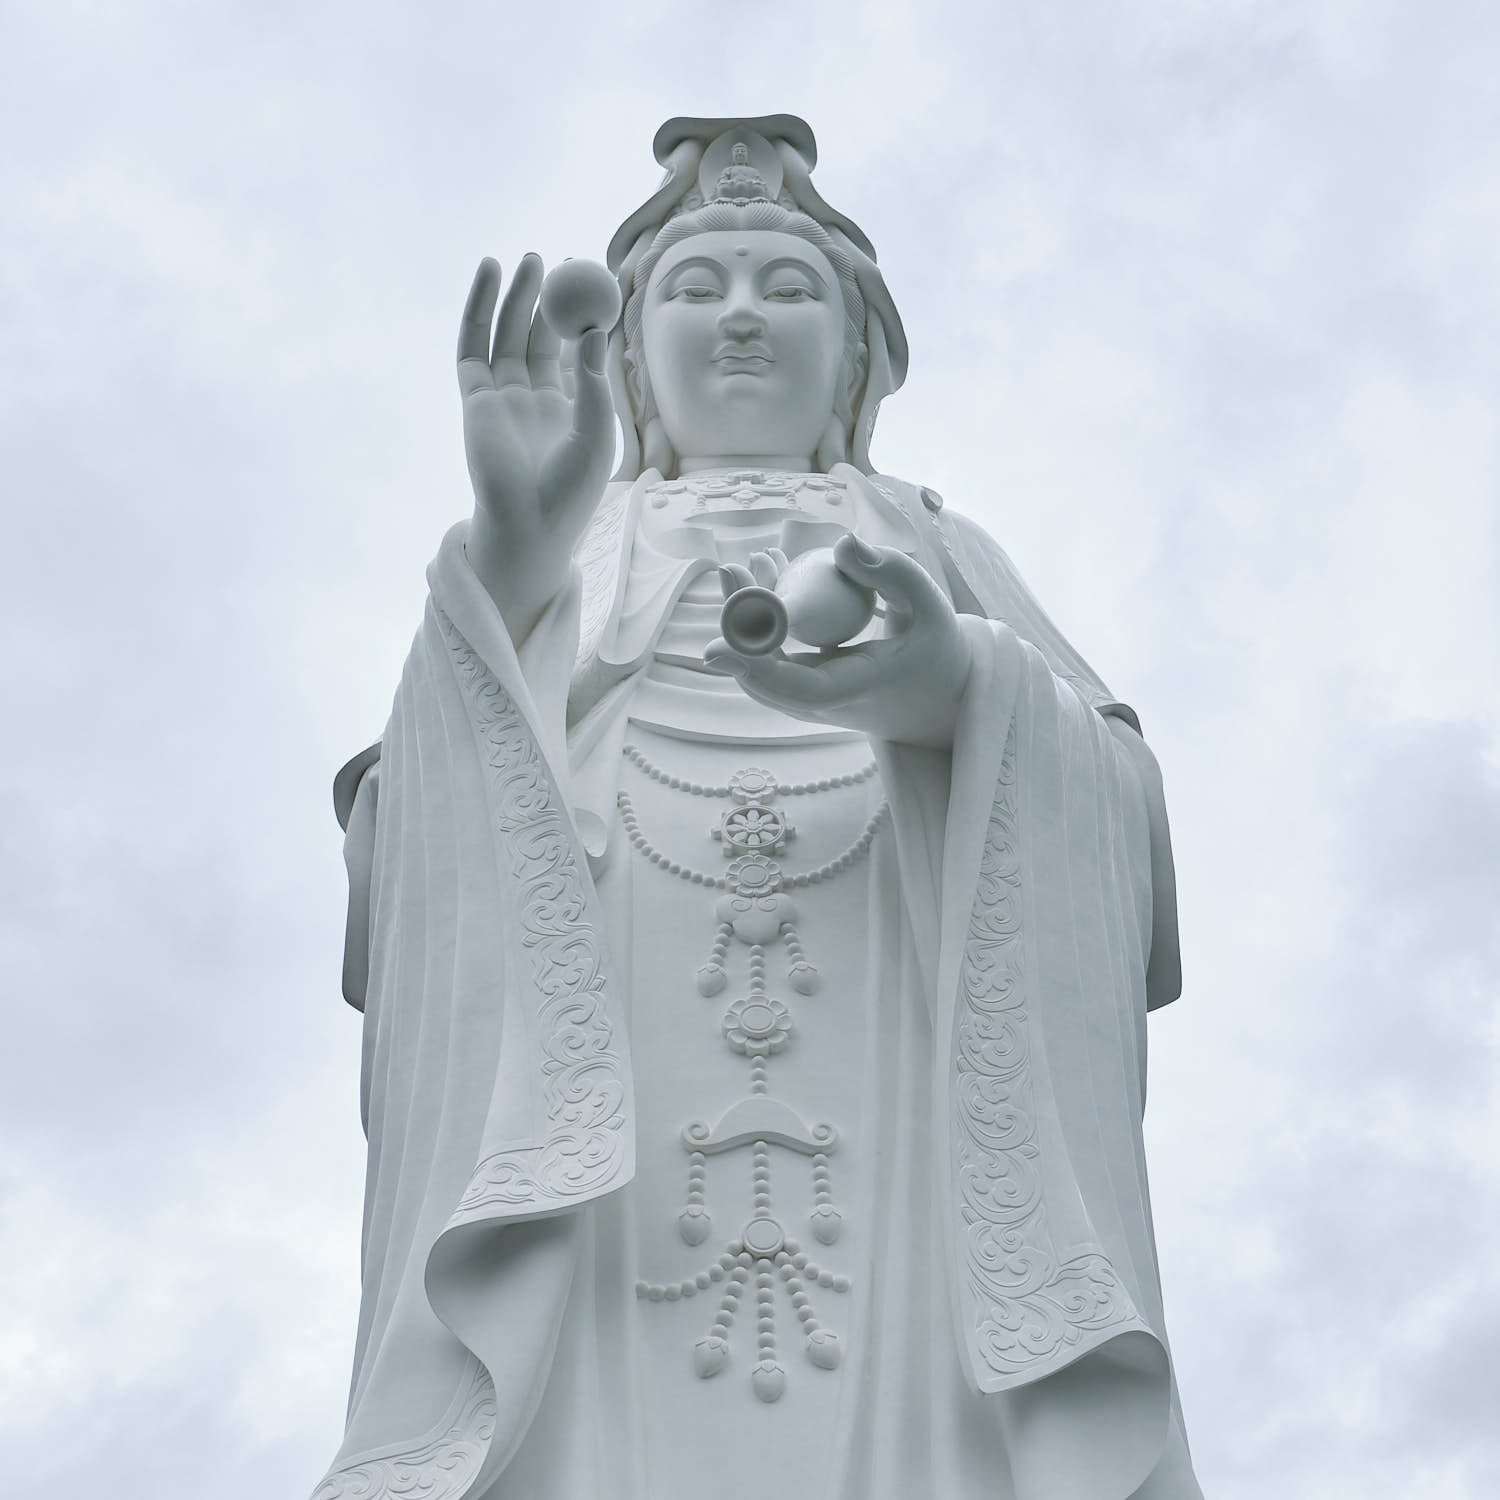 Guan Yin statue, Tsz Shan Temple, Hong Kong